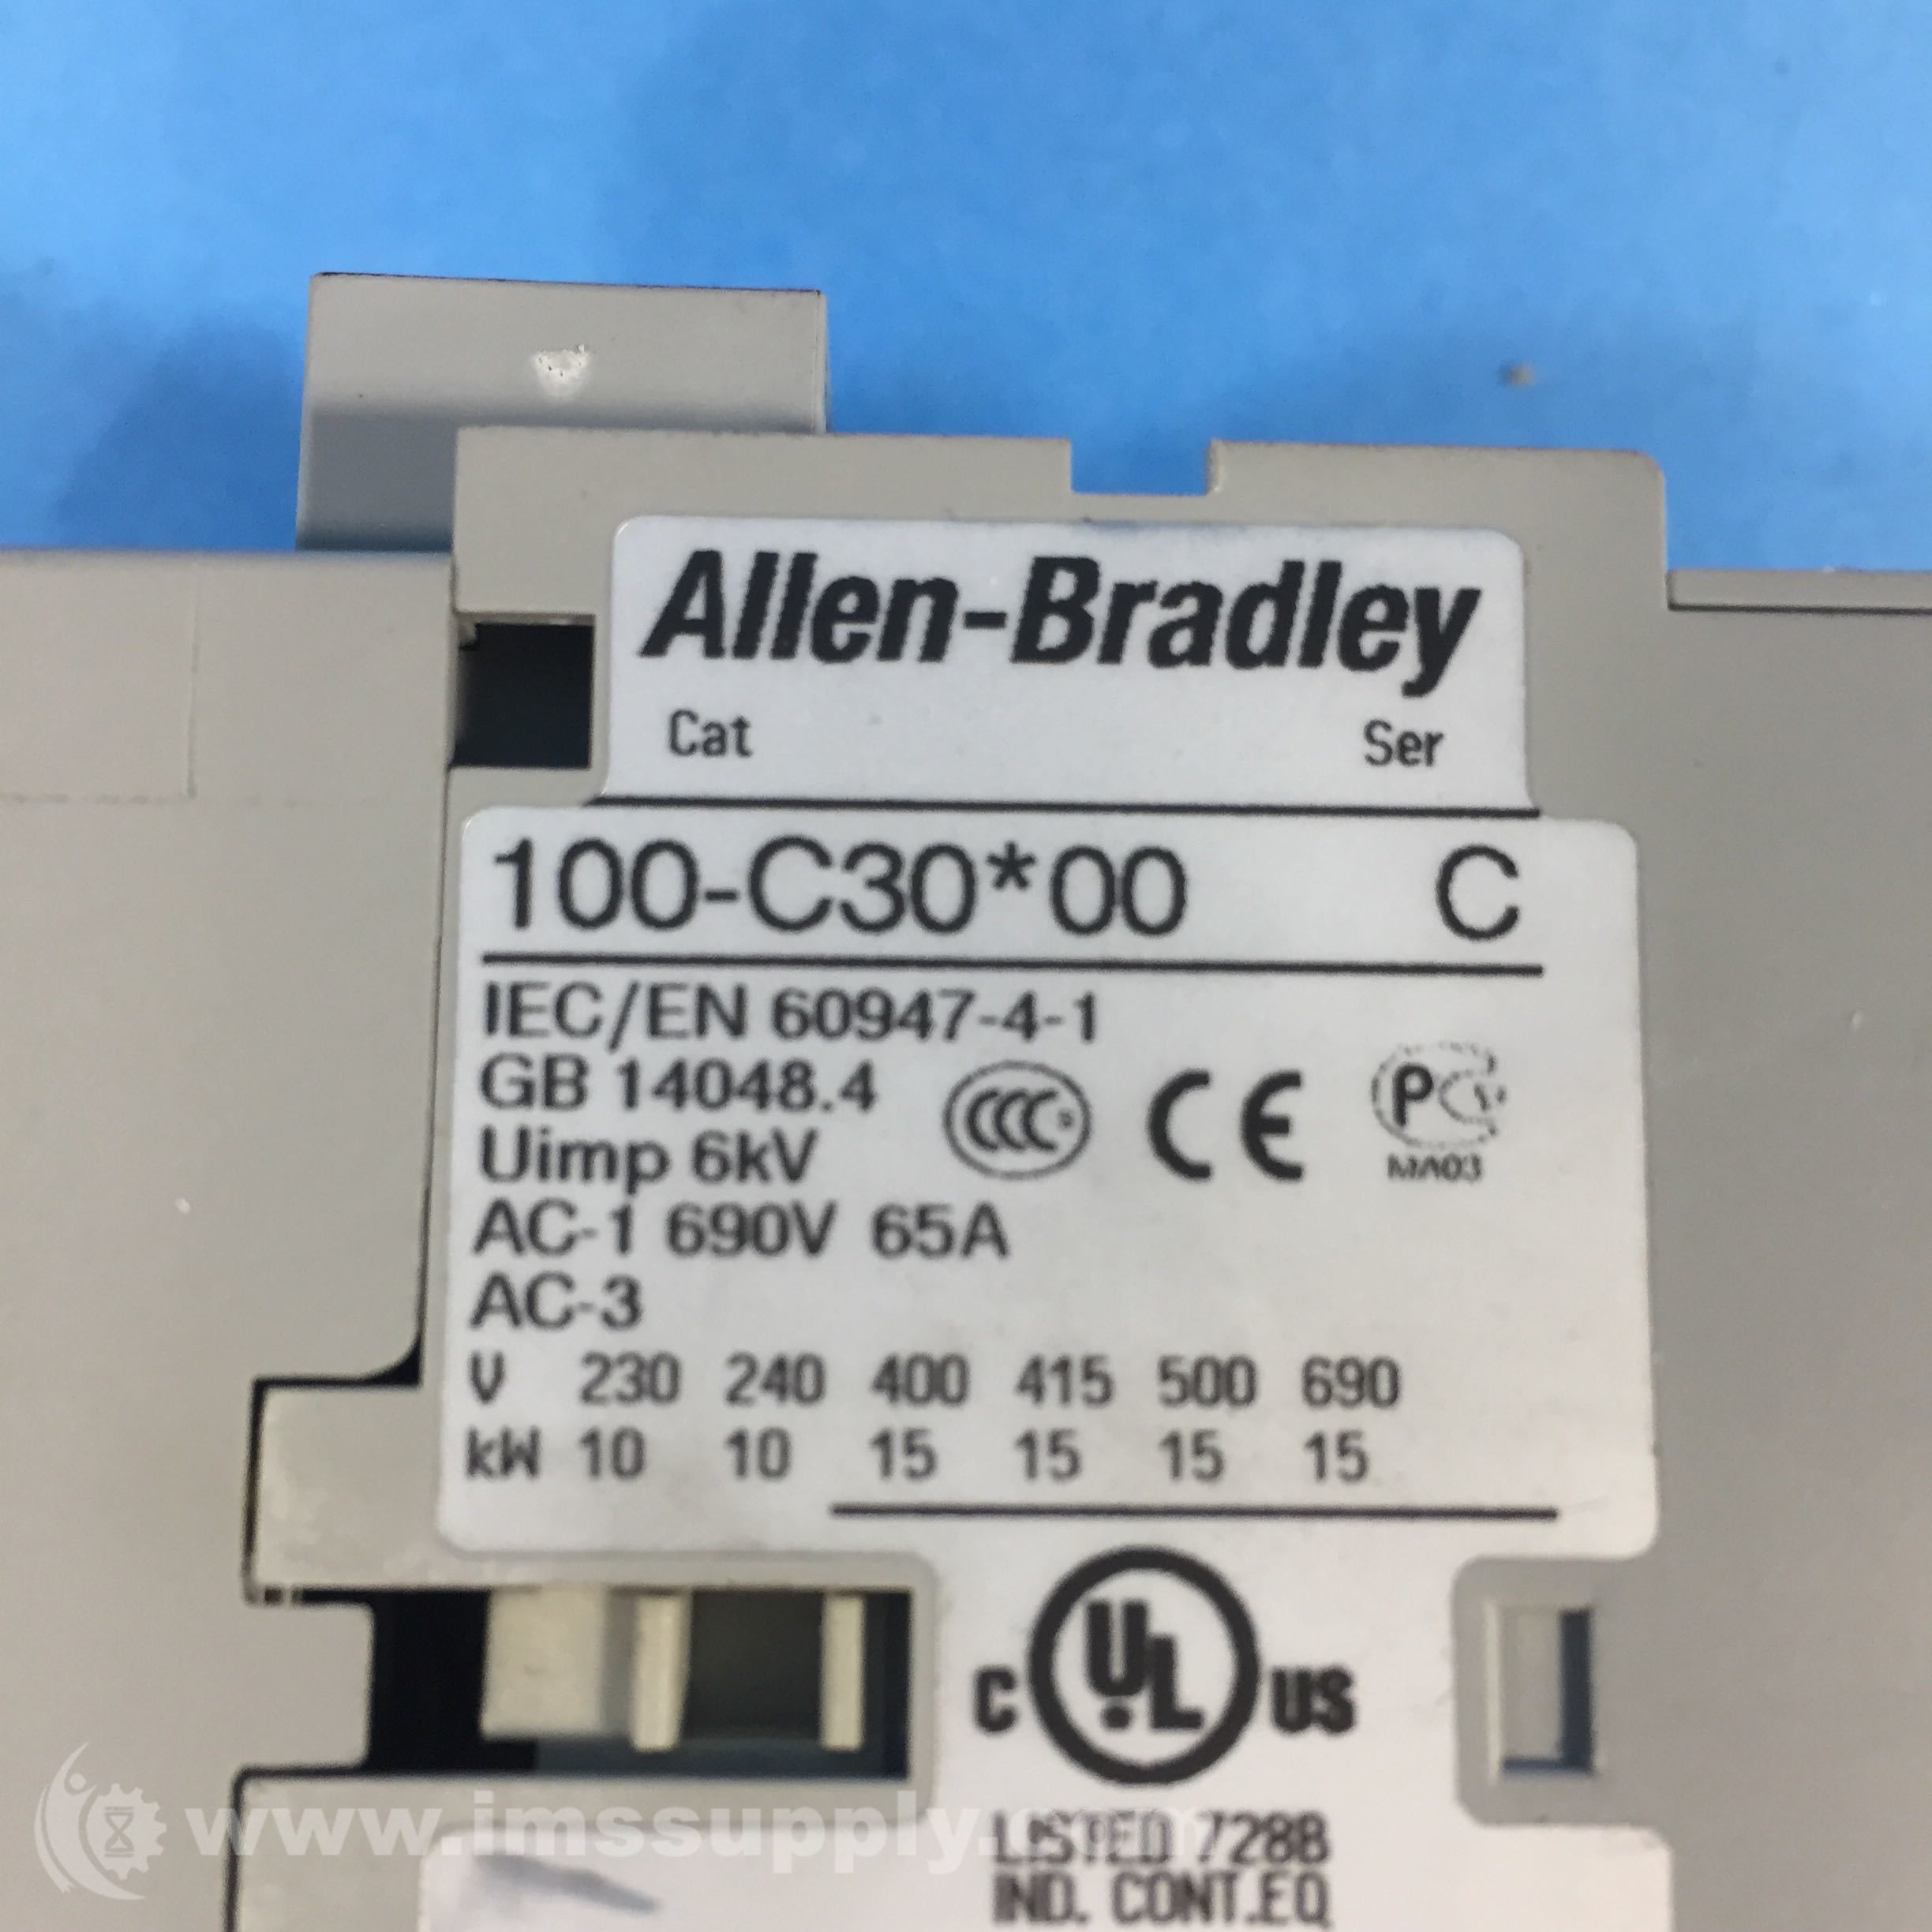 Allen-Bradley 193-EEFD/A 100-C30*00 Ser C Contactor 100-F 100-S